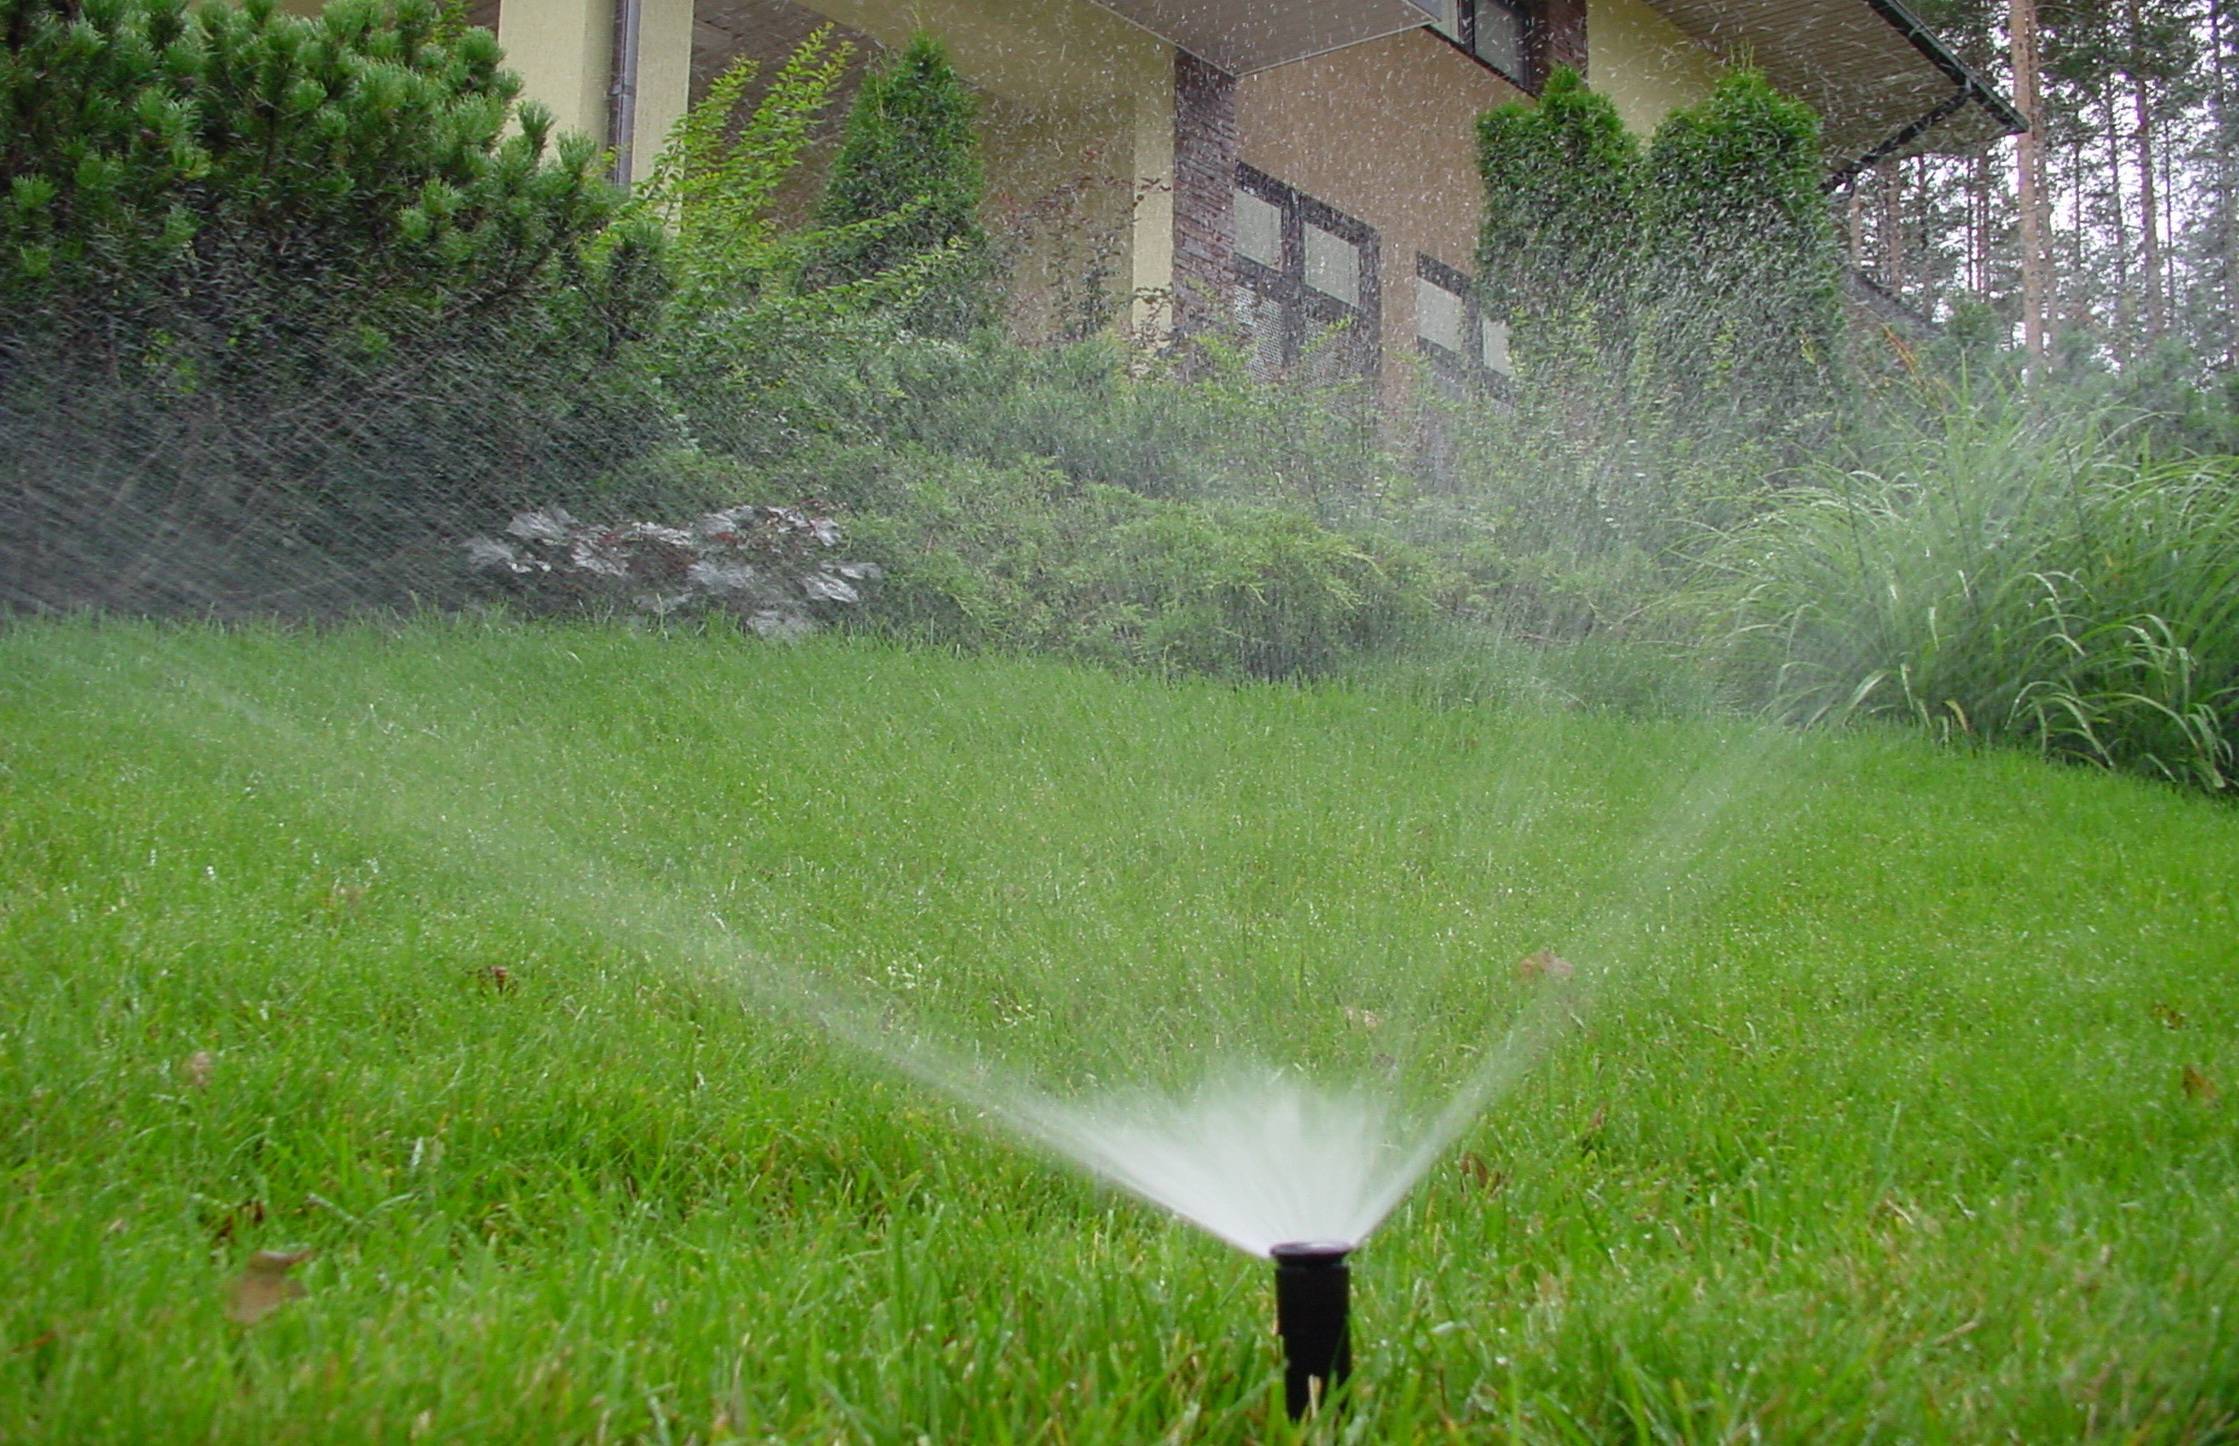 Как часто поливать газон после посадки или укладки?